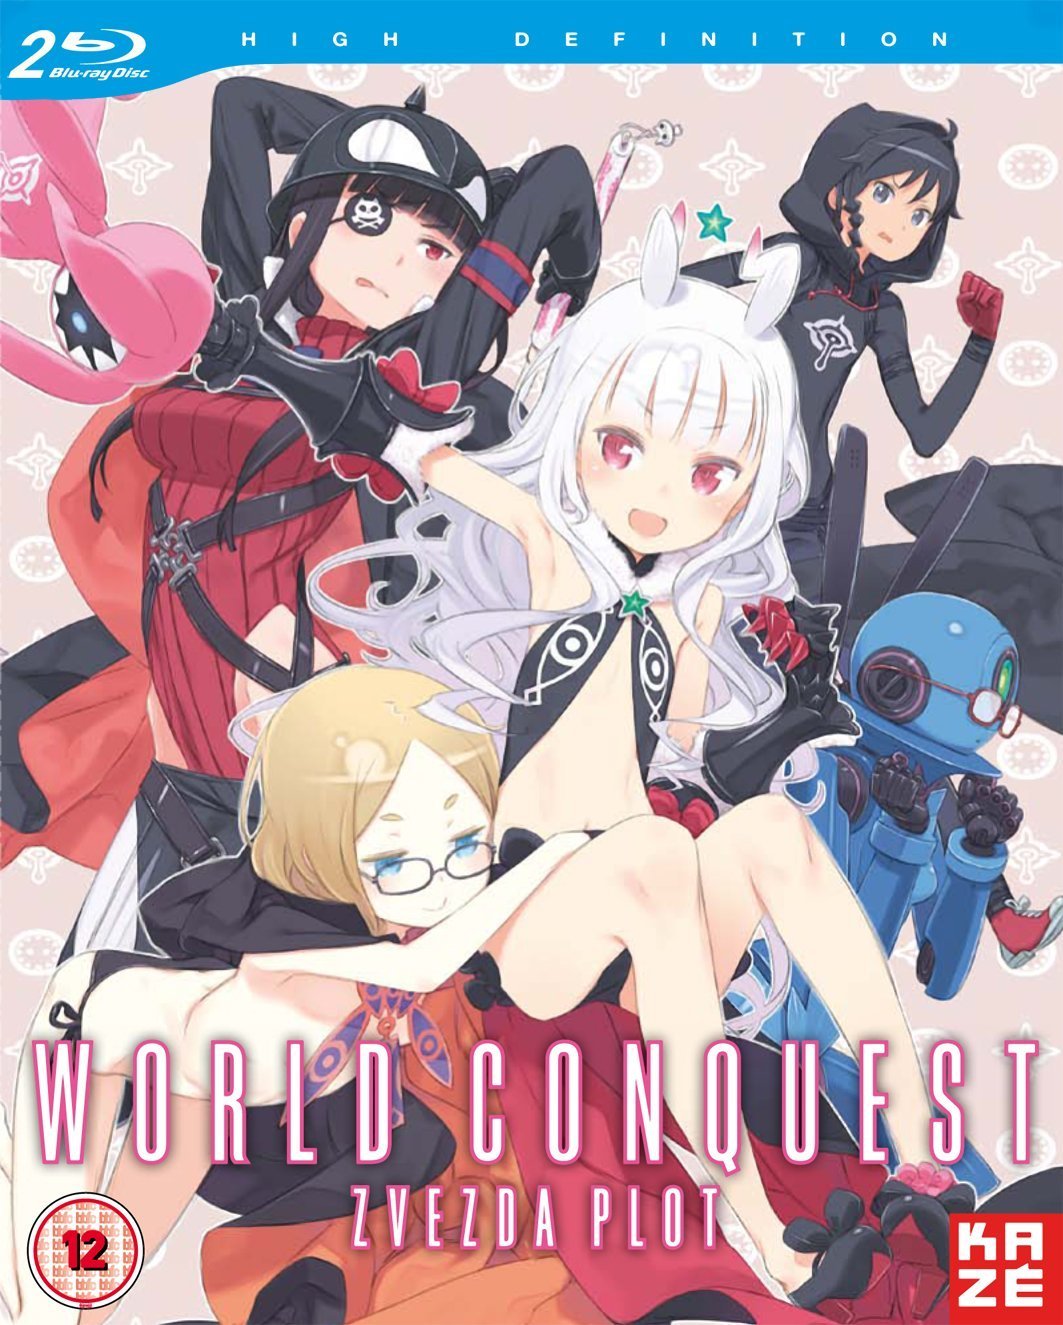 World Conquest zvezda Plot. World Conquest zvezda Plot Peko. World conquest zvezda